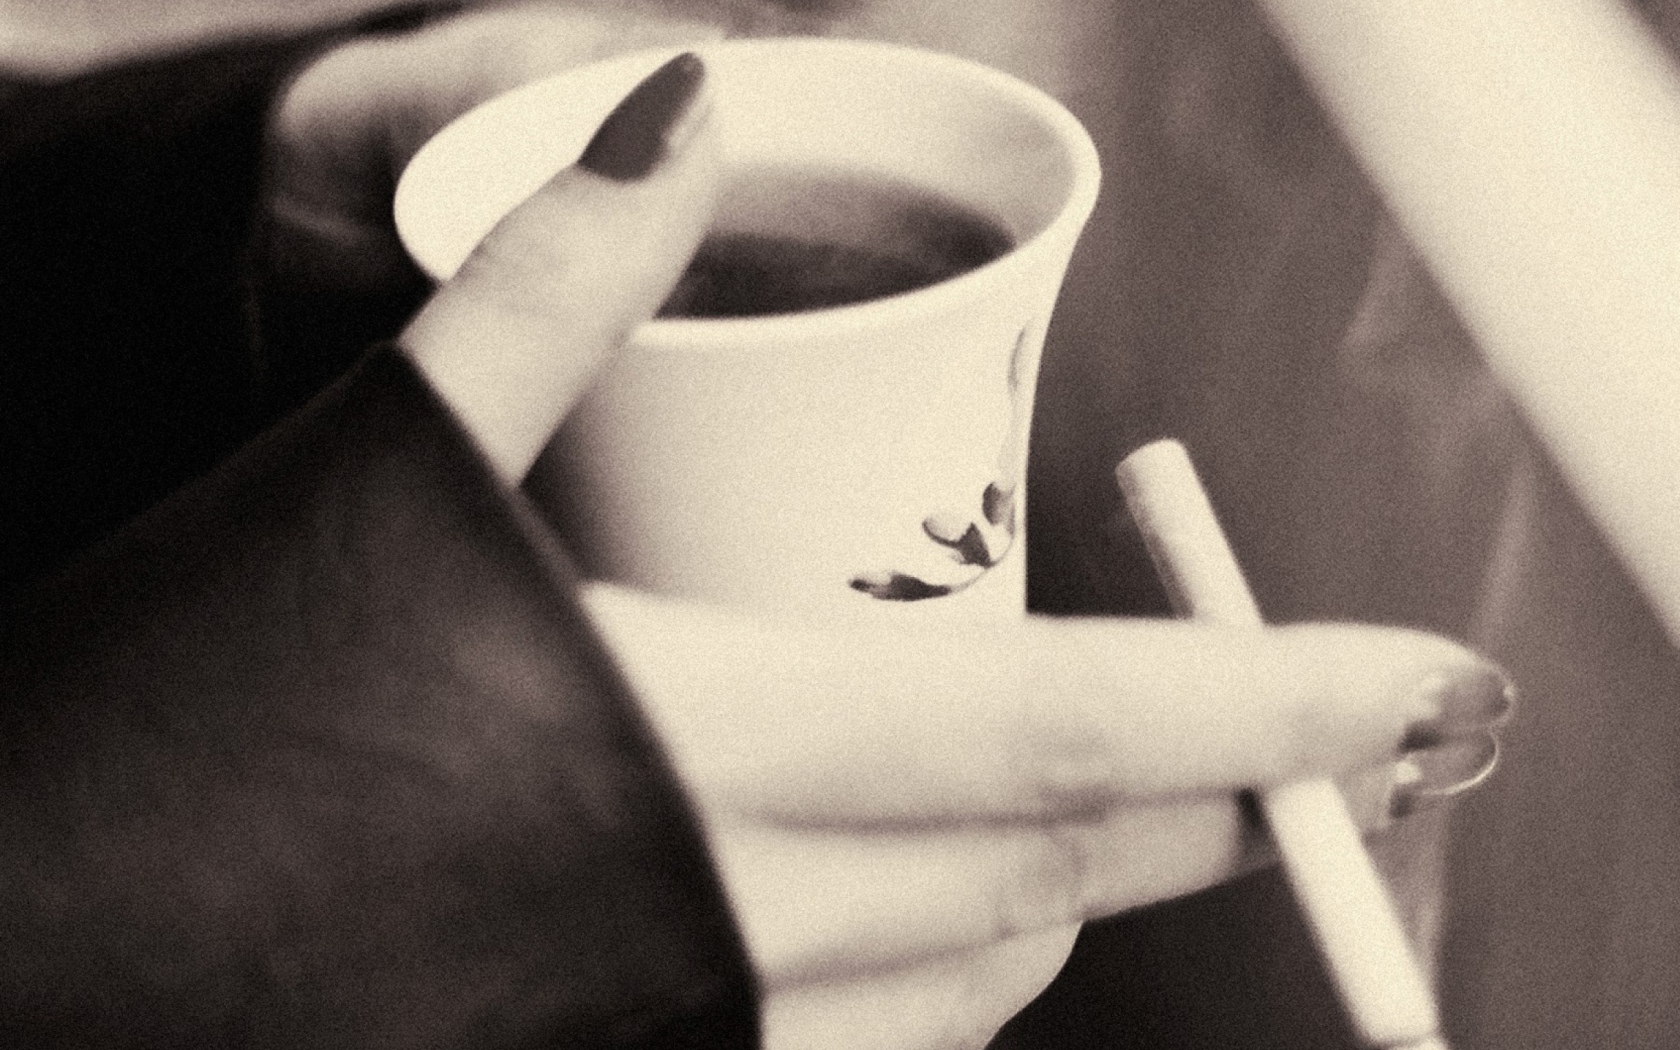 Hot Coffee In Her Hands screenshot #1 1680x1050